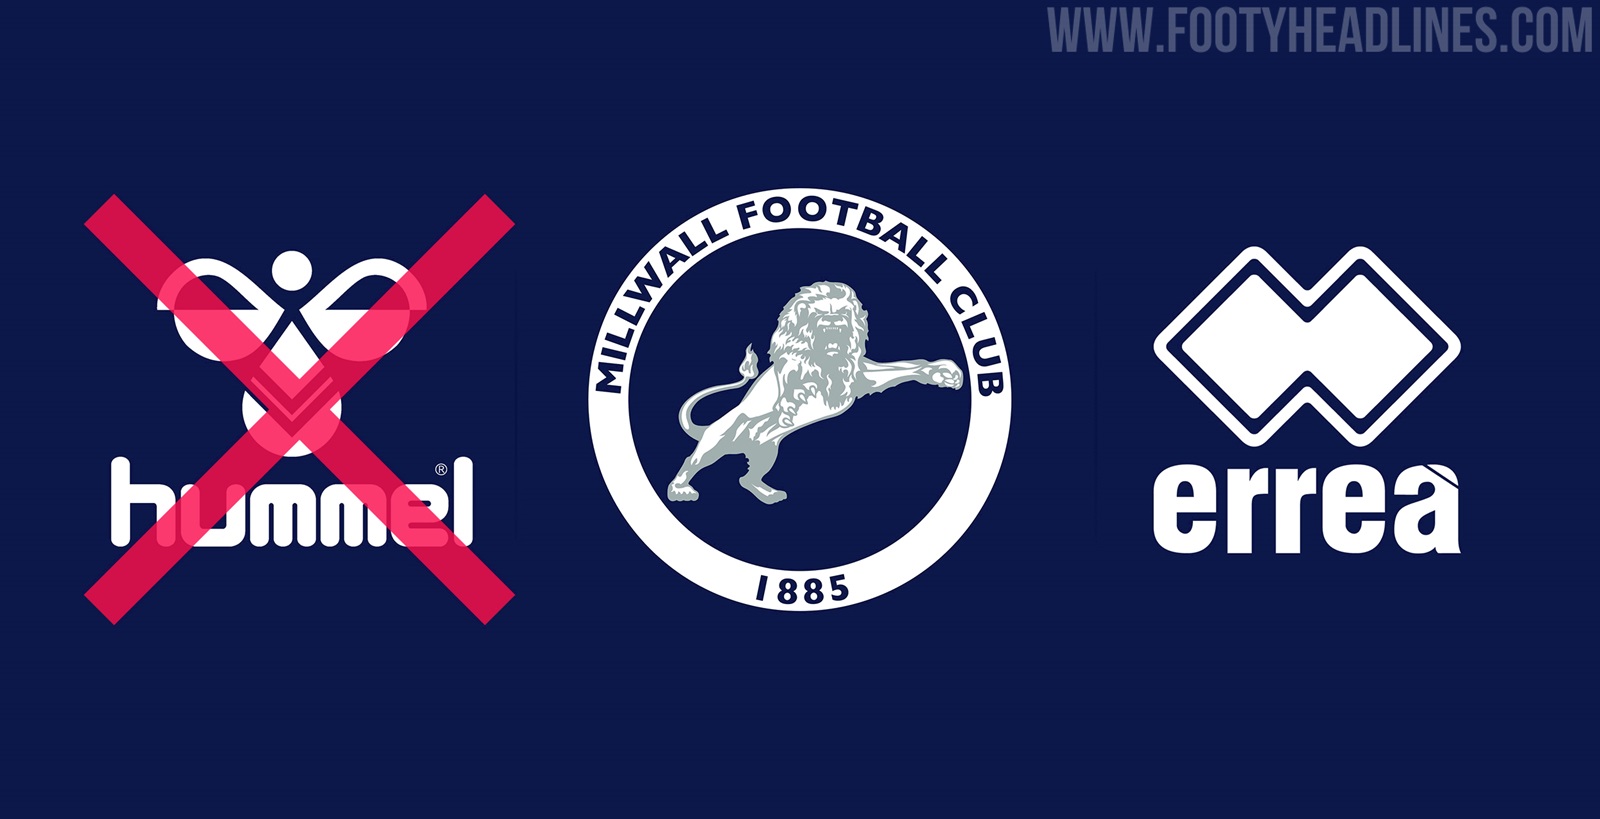 Millwall Announce Errea Kit Deal After Hummel's UK Distributor Go Bankrupt  - Footy Headlines